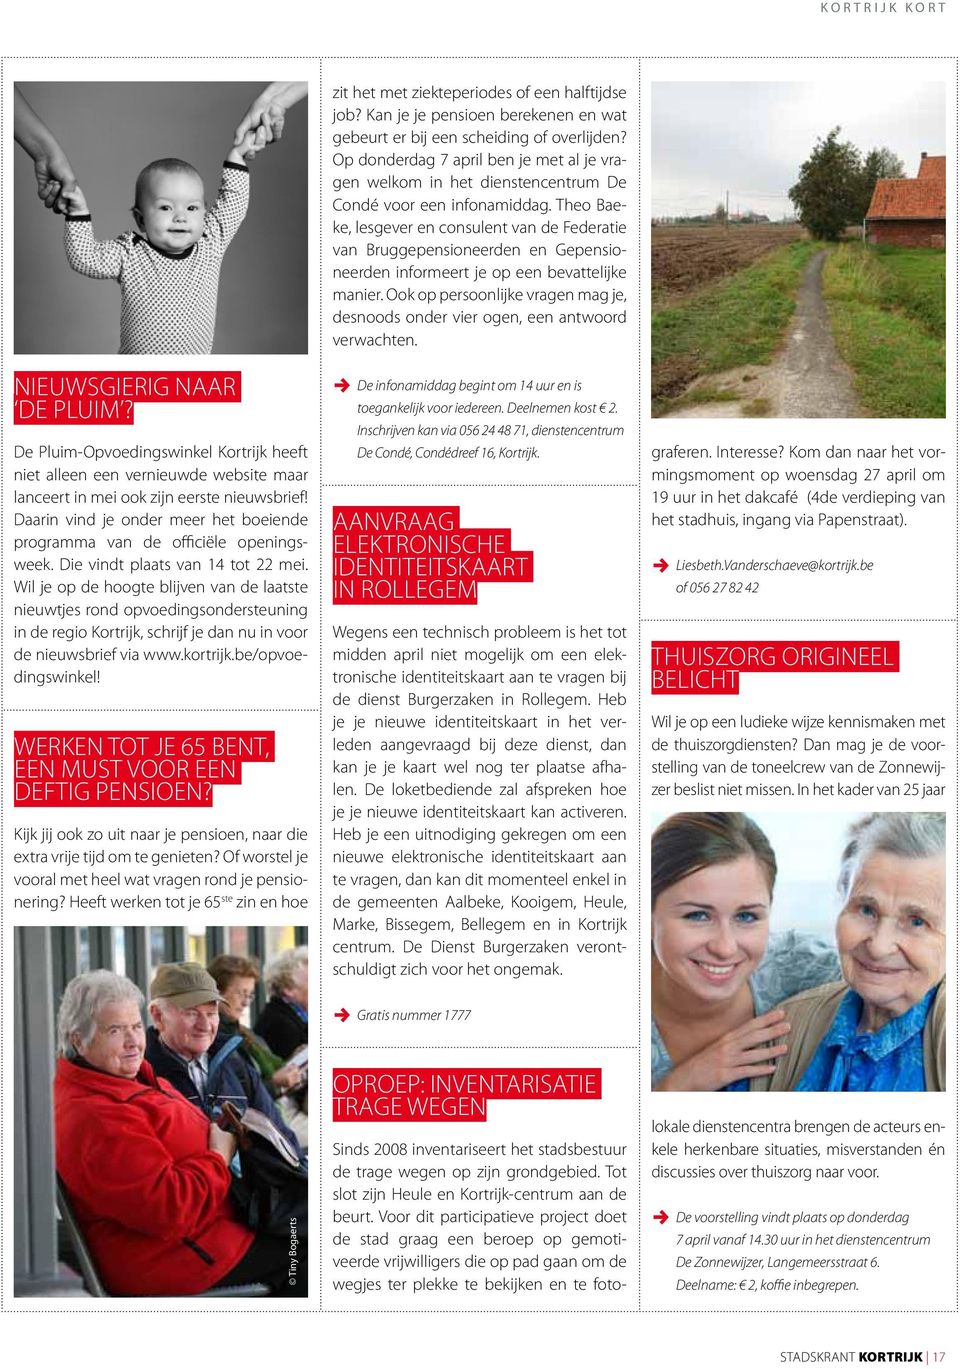 Wil je op de hoogte blijven van de laatste nieuwtjes rond opvoedingsondersteuning in de regio Kortrijk, schrijf je dan nu in voor de nieuwsbrief via www.kortrijk.be/opvoedingswinkel!